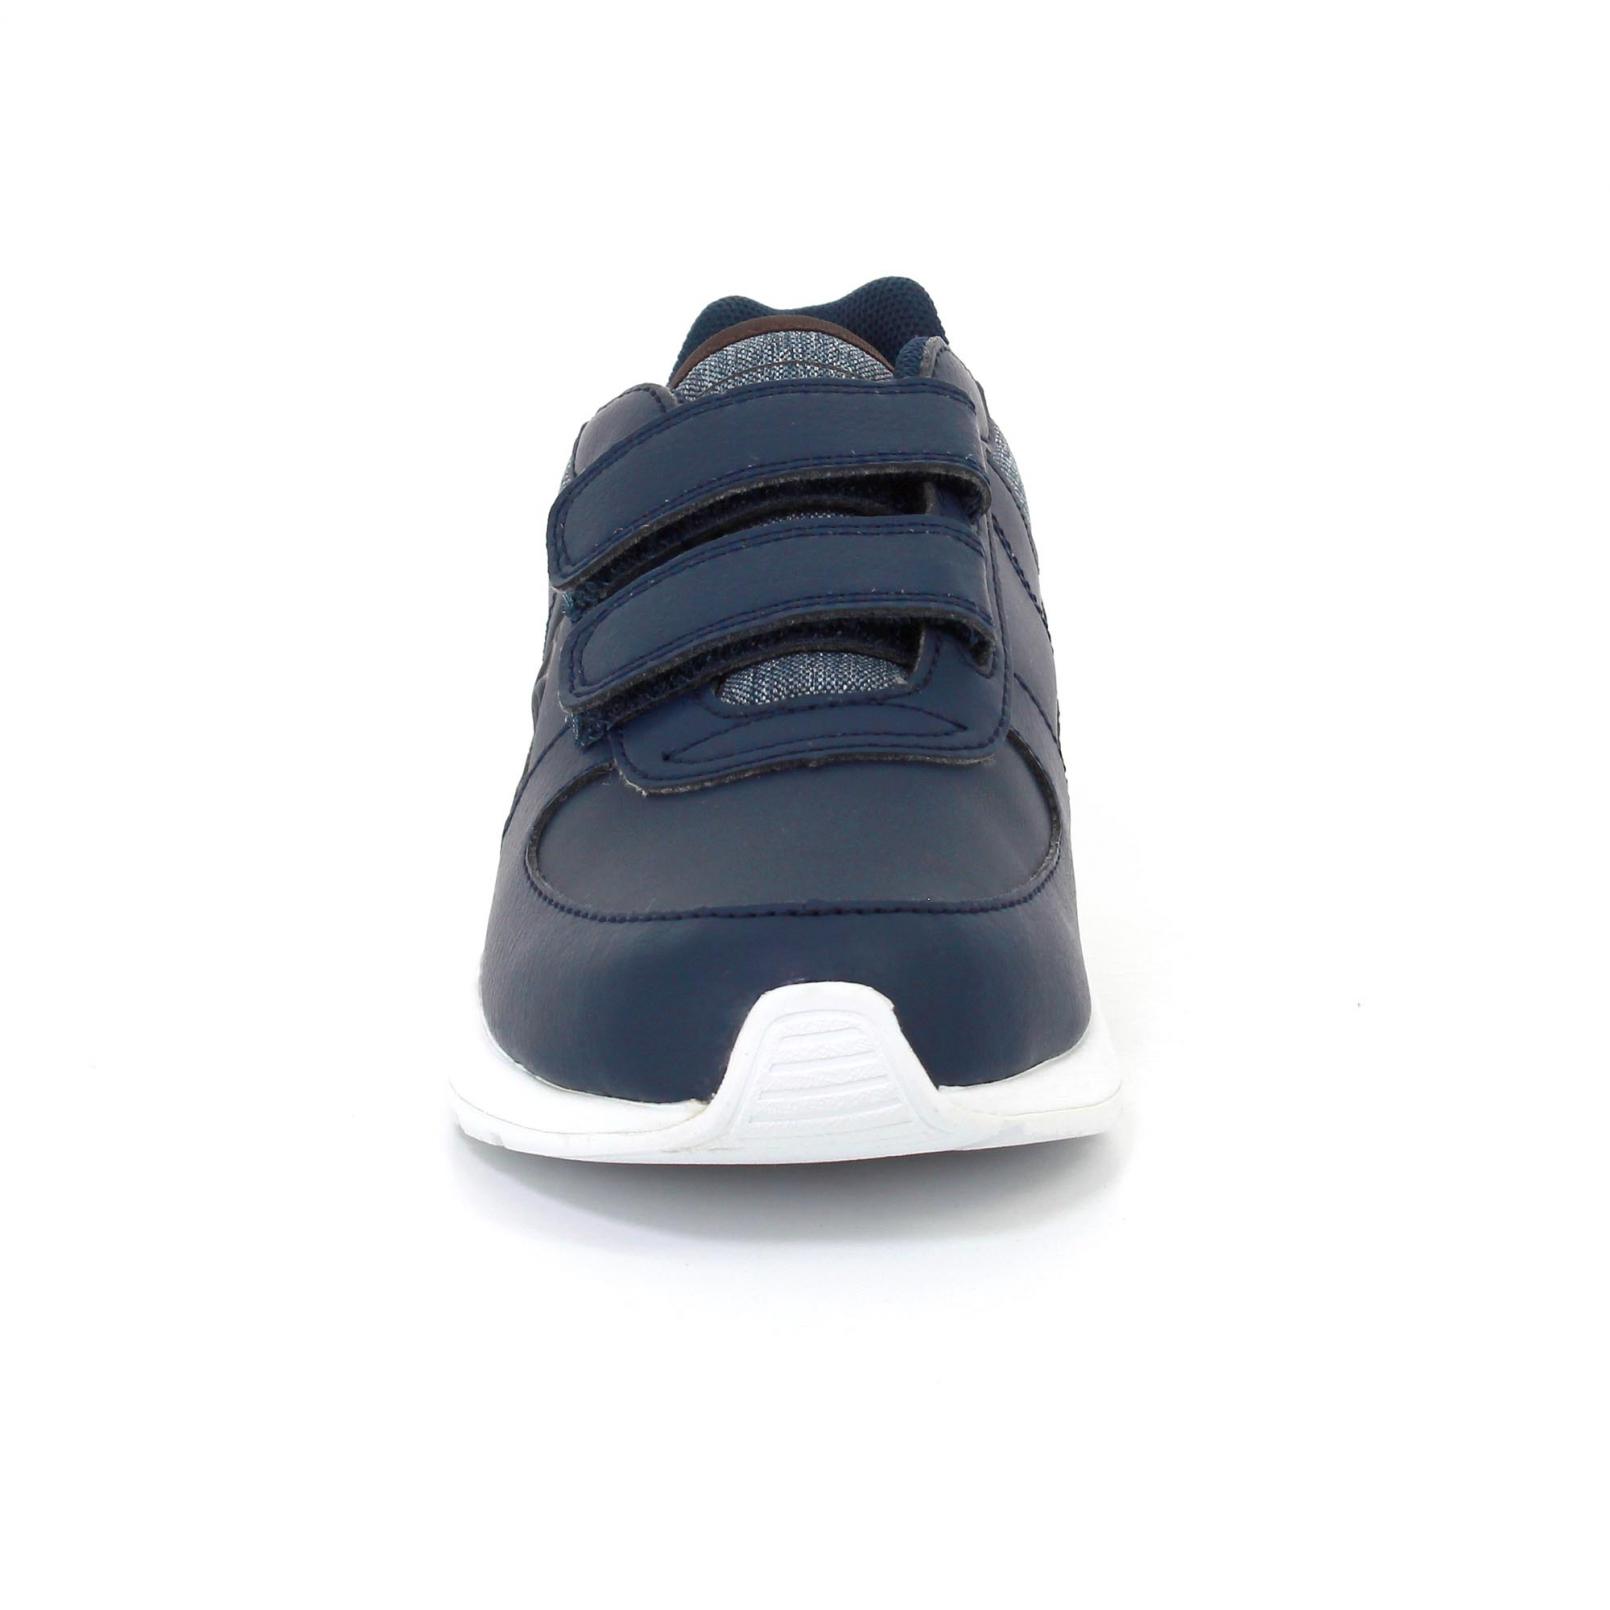 Shoes – Le Coq Sportif Bts R600 Ps S Lea/2 Tones Blue/Brown